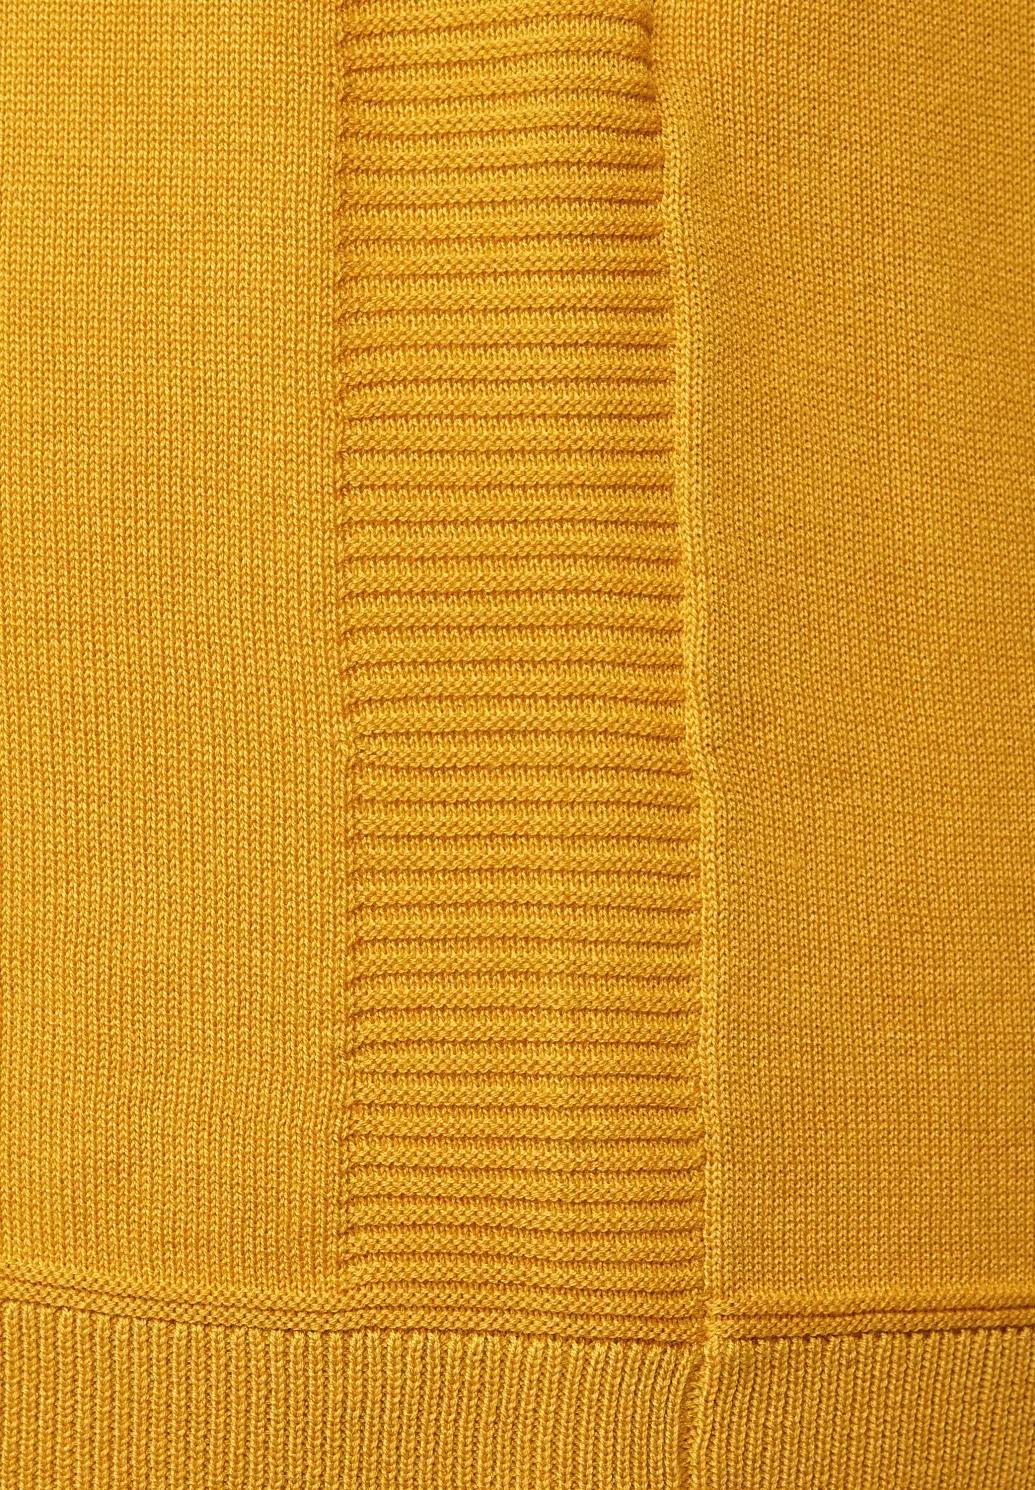 CECIL základný sveter, žlt.